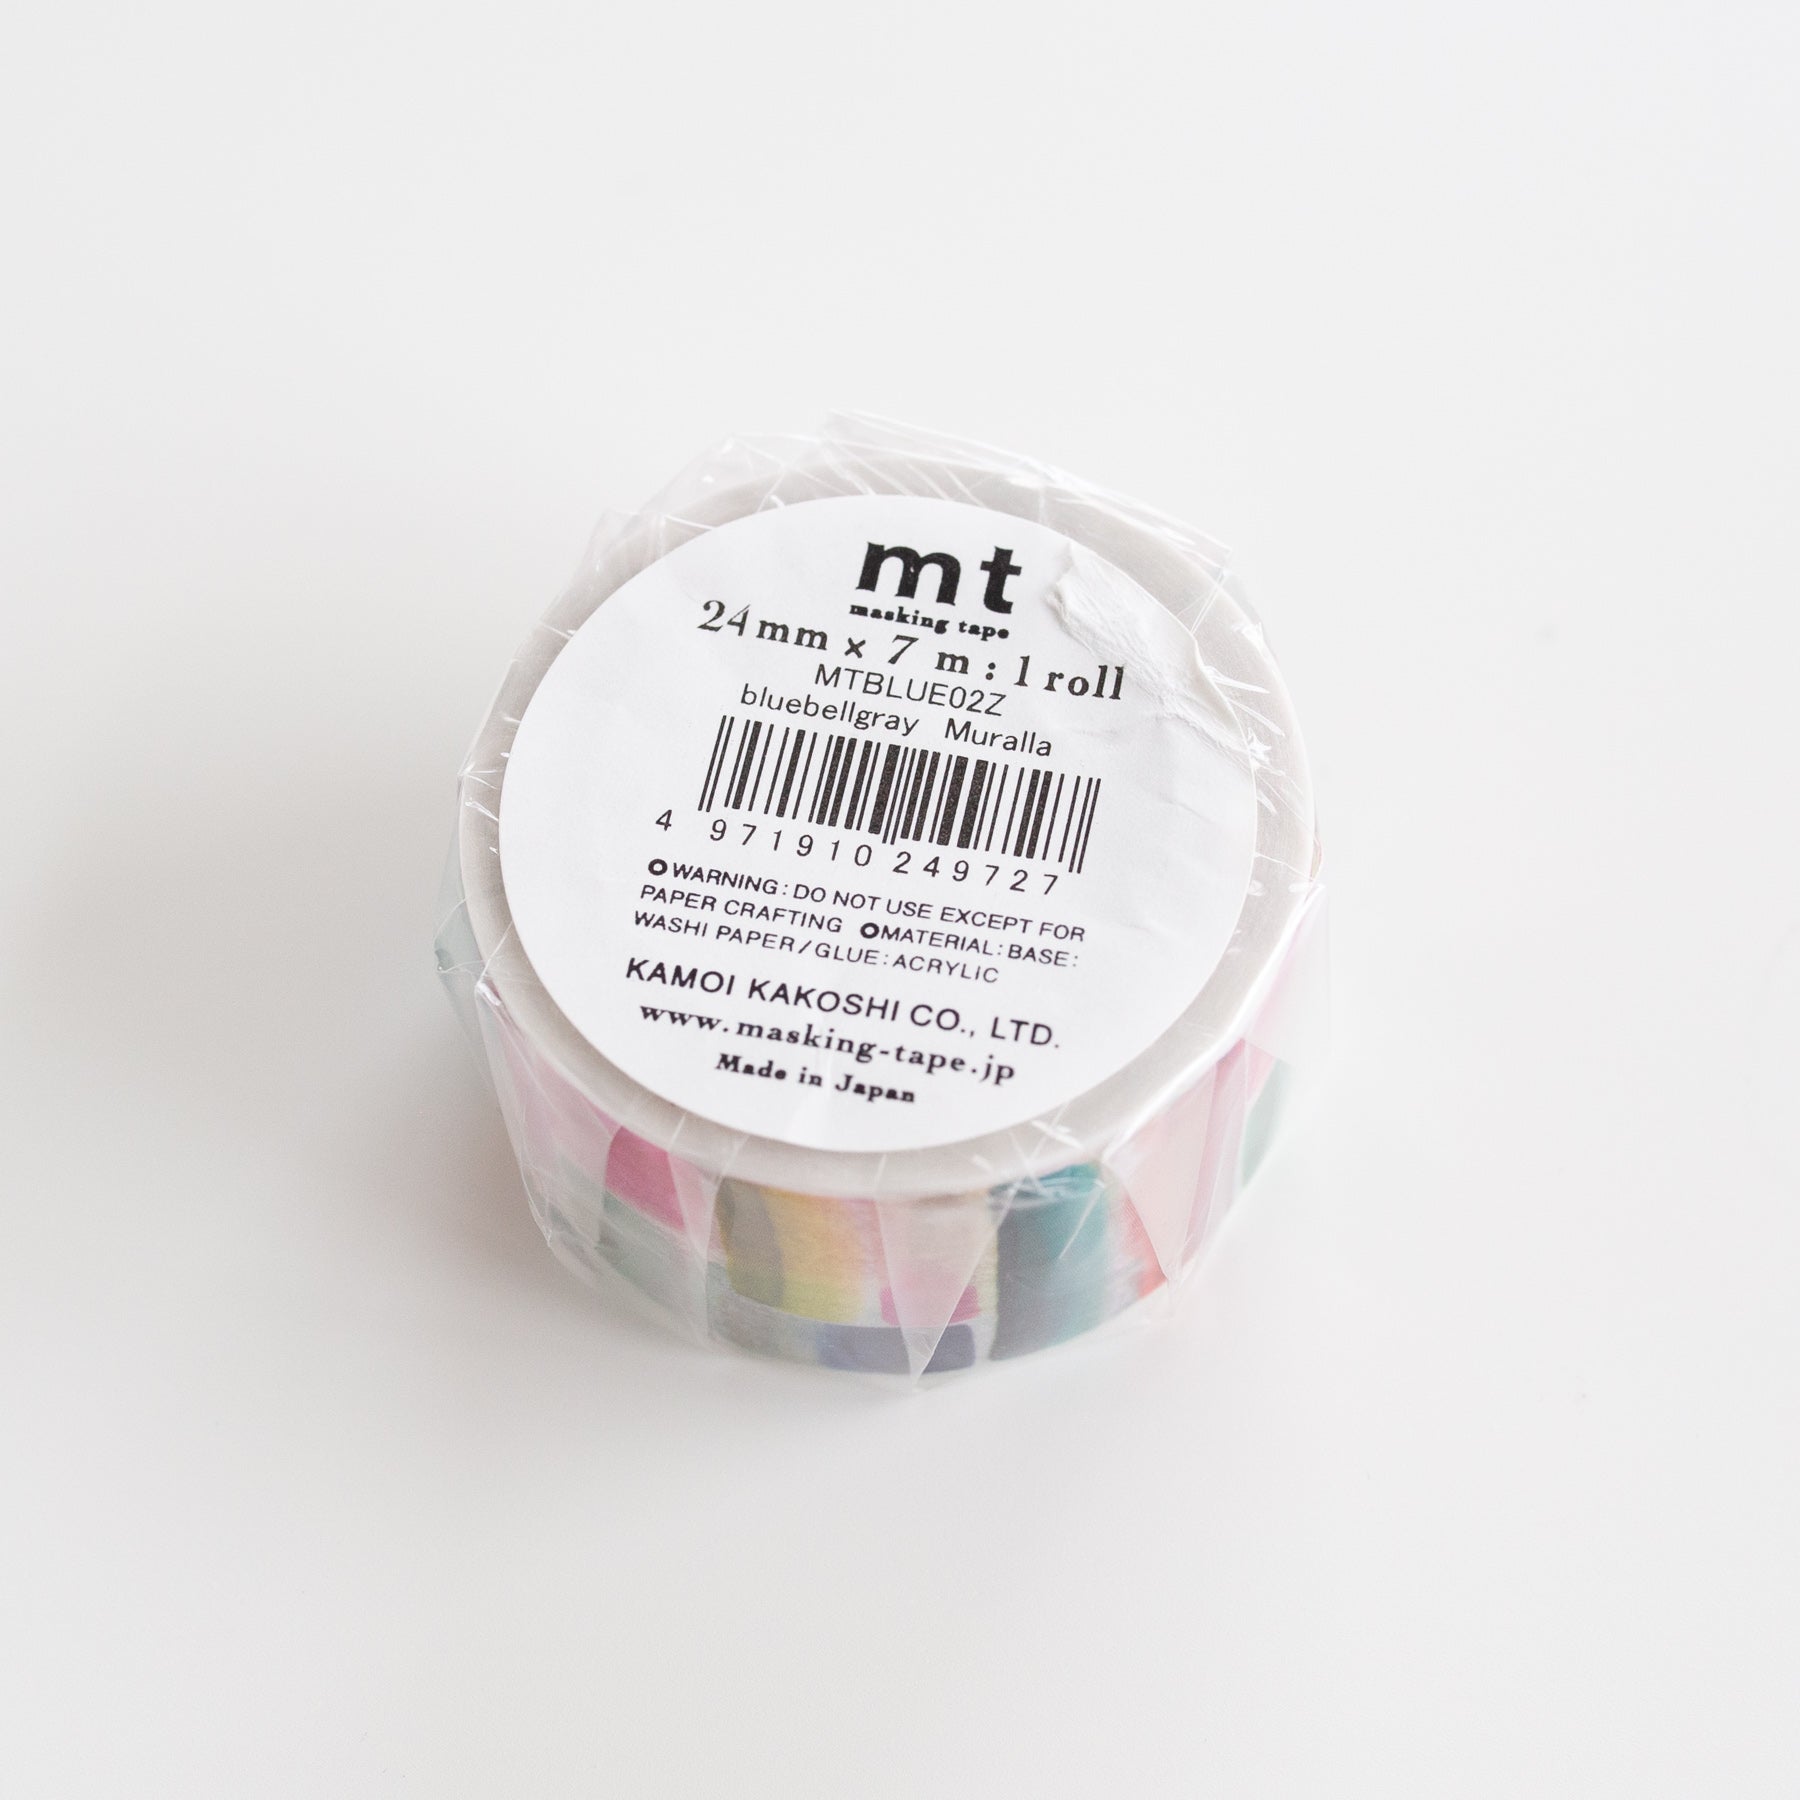 MT masking tape Bluebellgray Muralla